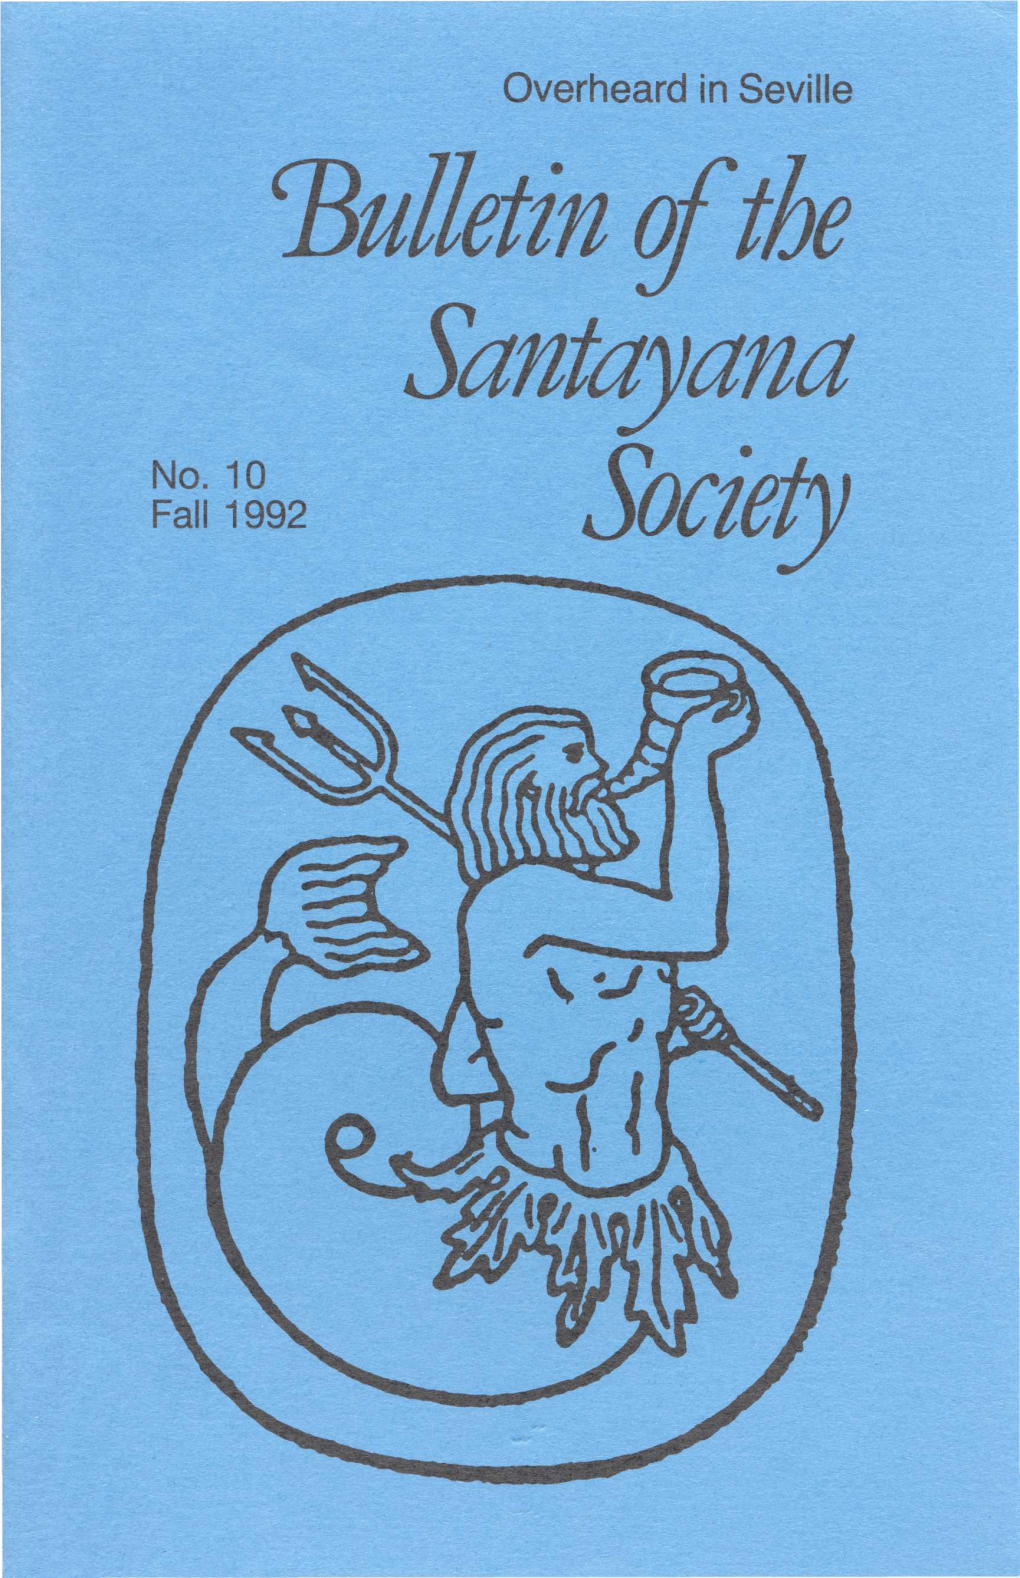 Bulletin of the Santayana No